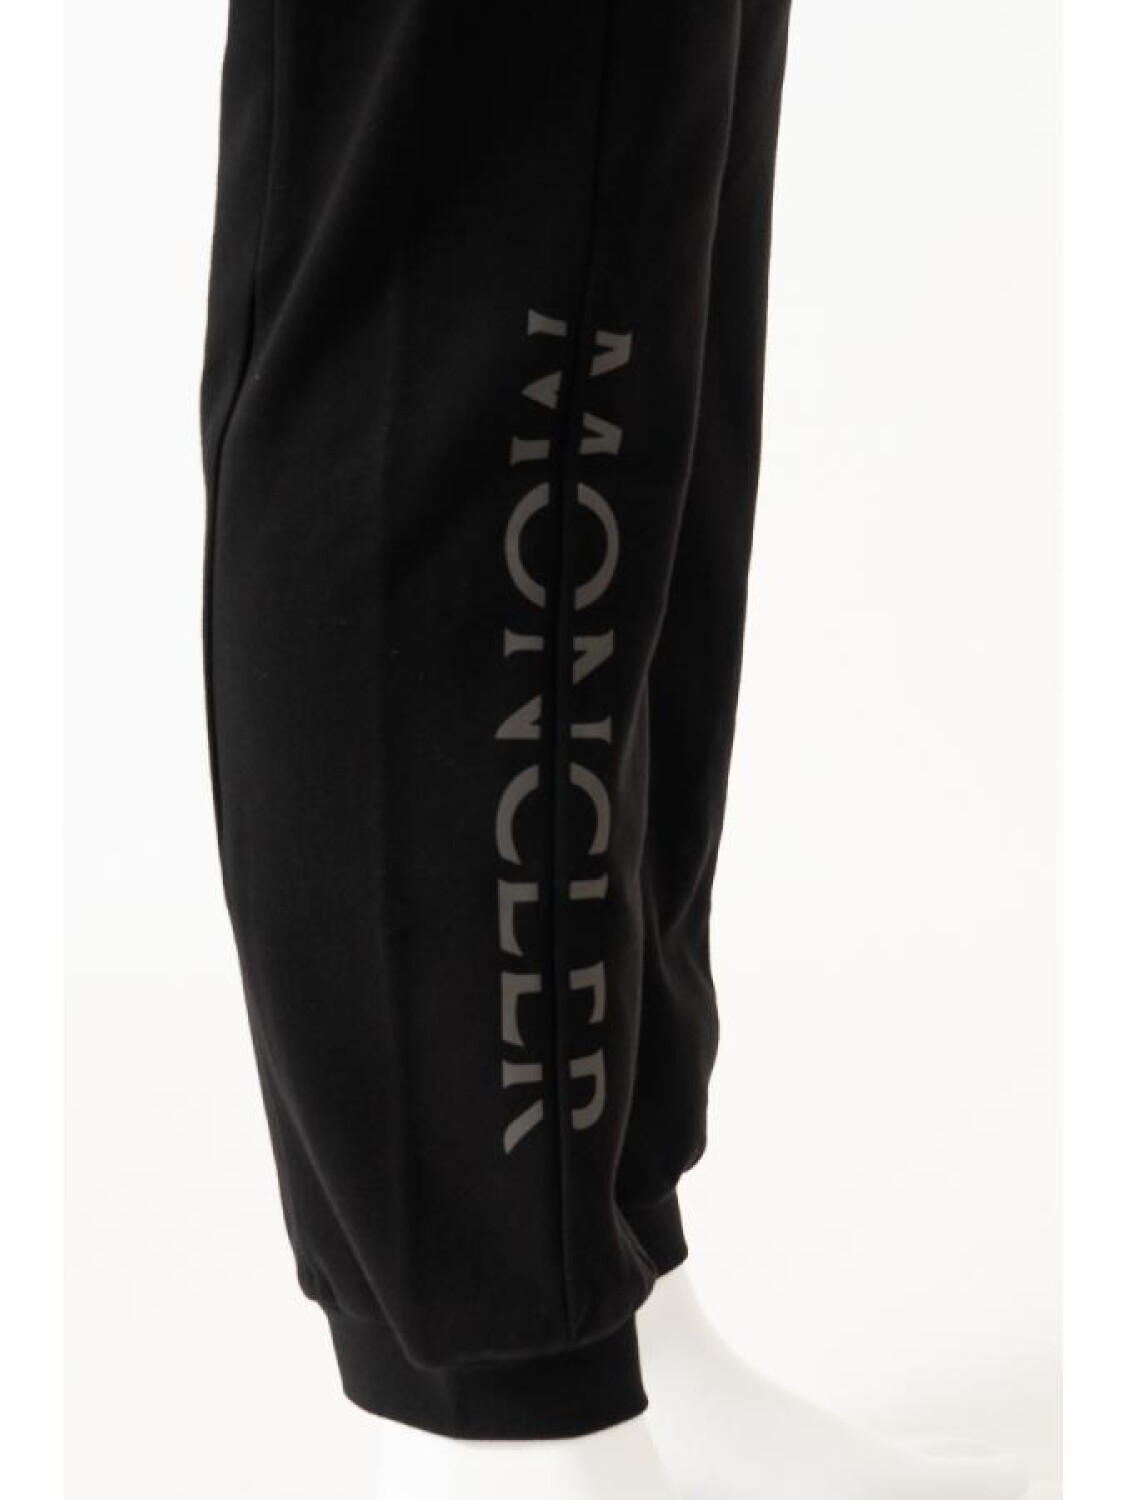 Pantalón deportivo de algodón con bolsillos Negro